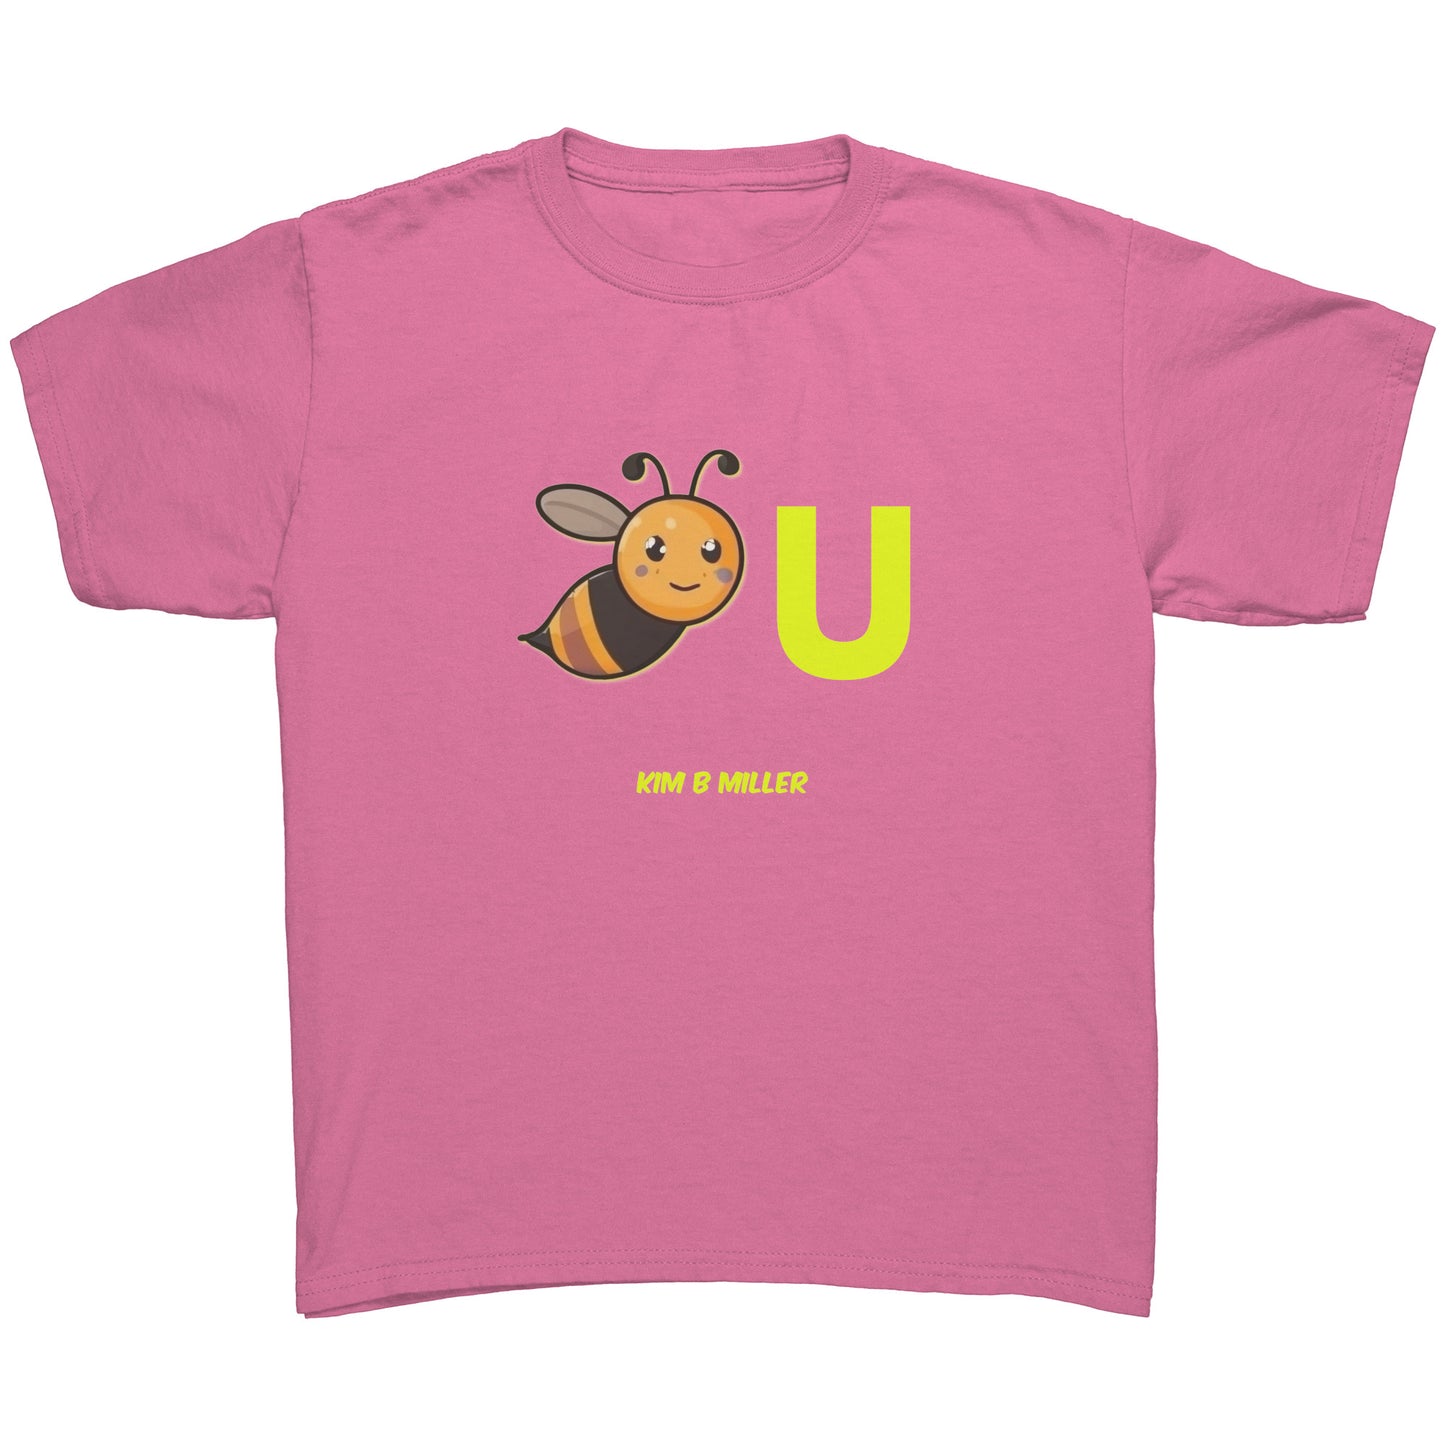 "Bee" You Gildan Youth Shirt